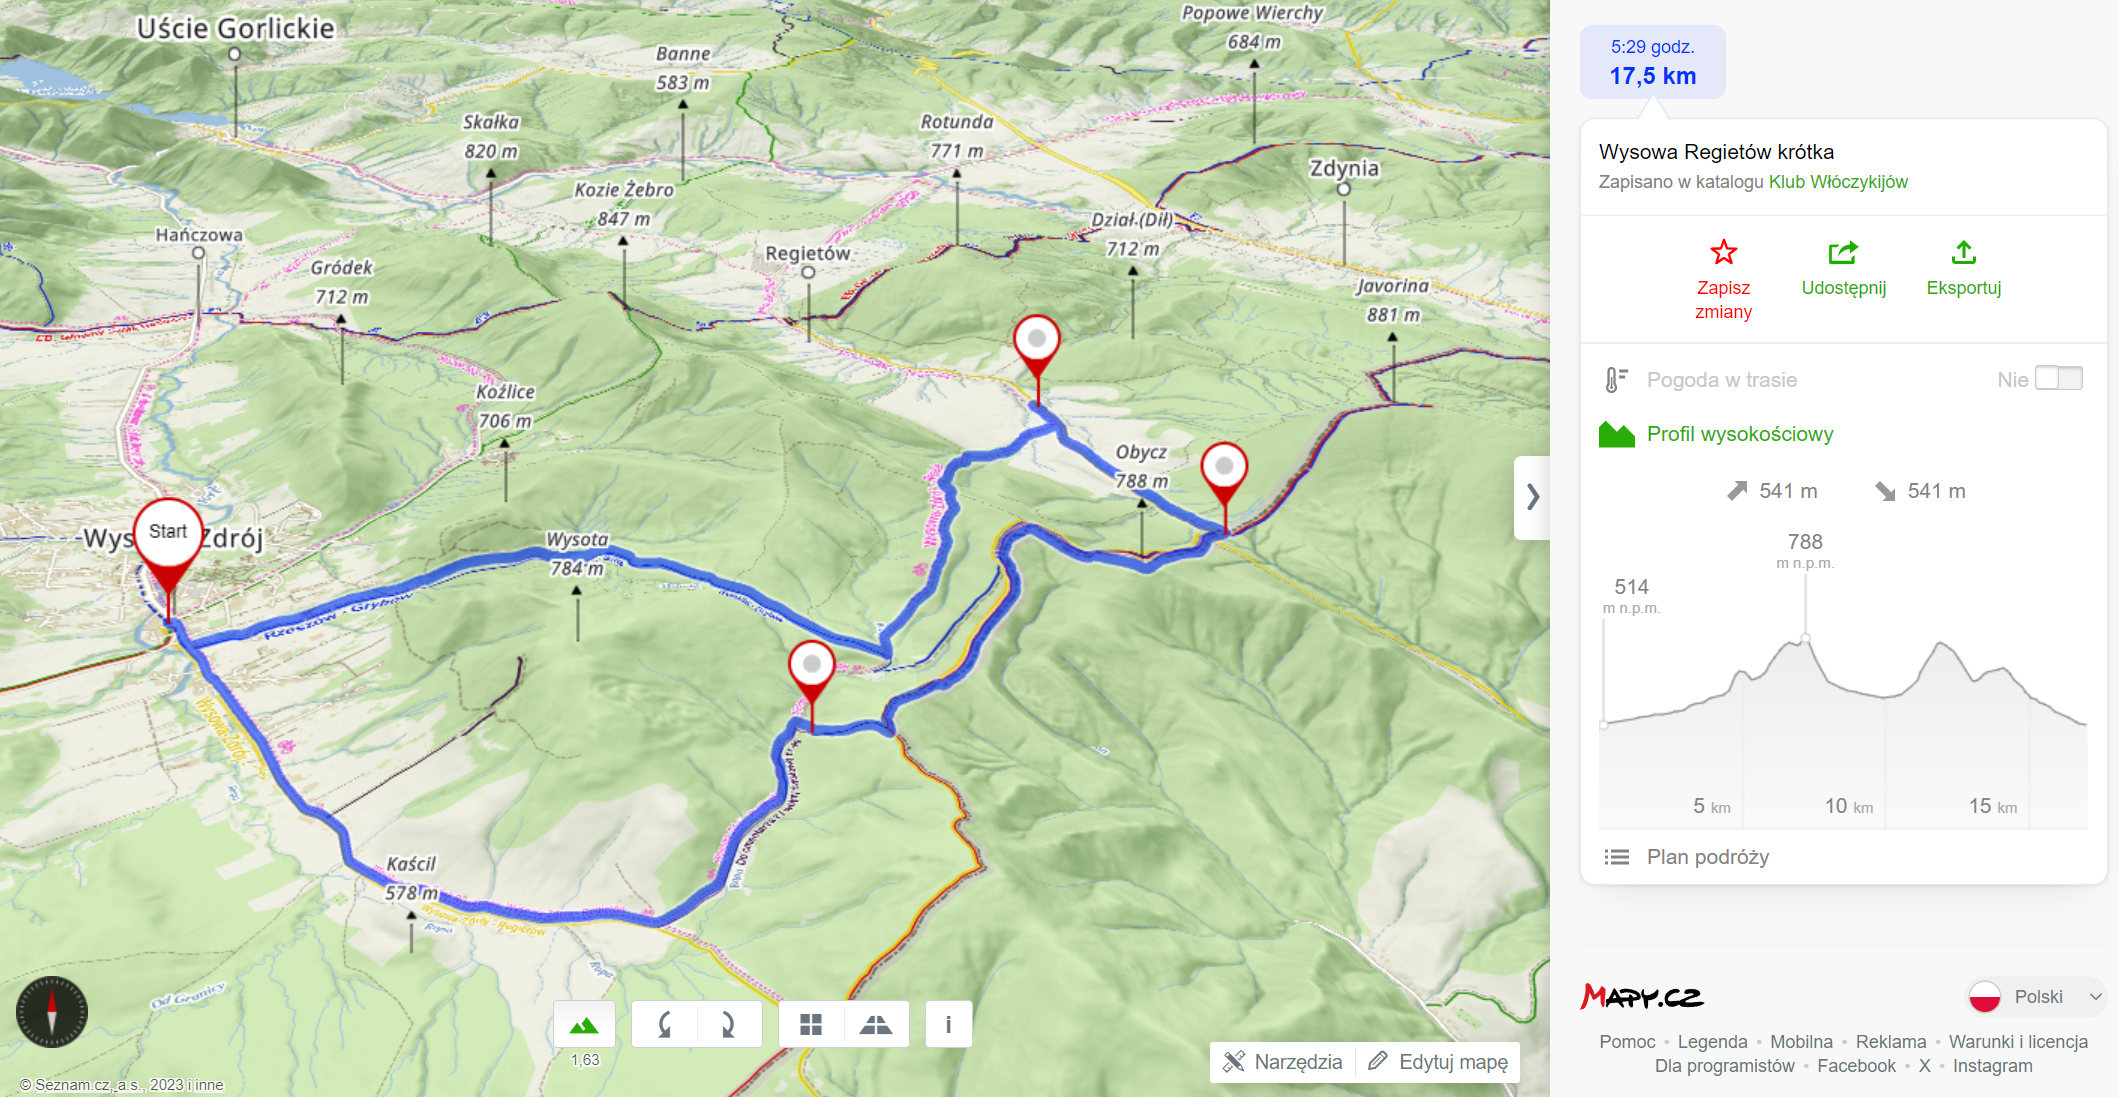 Planowana Trasa wycieczki (17,5km, 541m podejść)